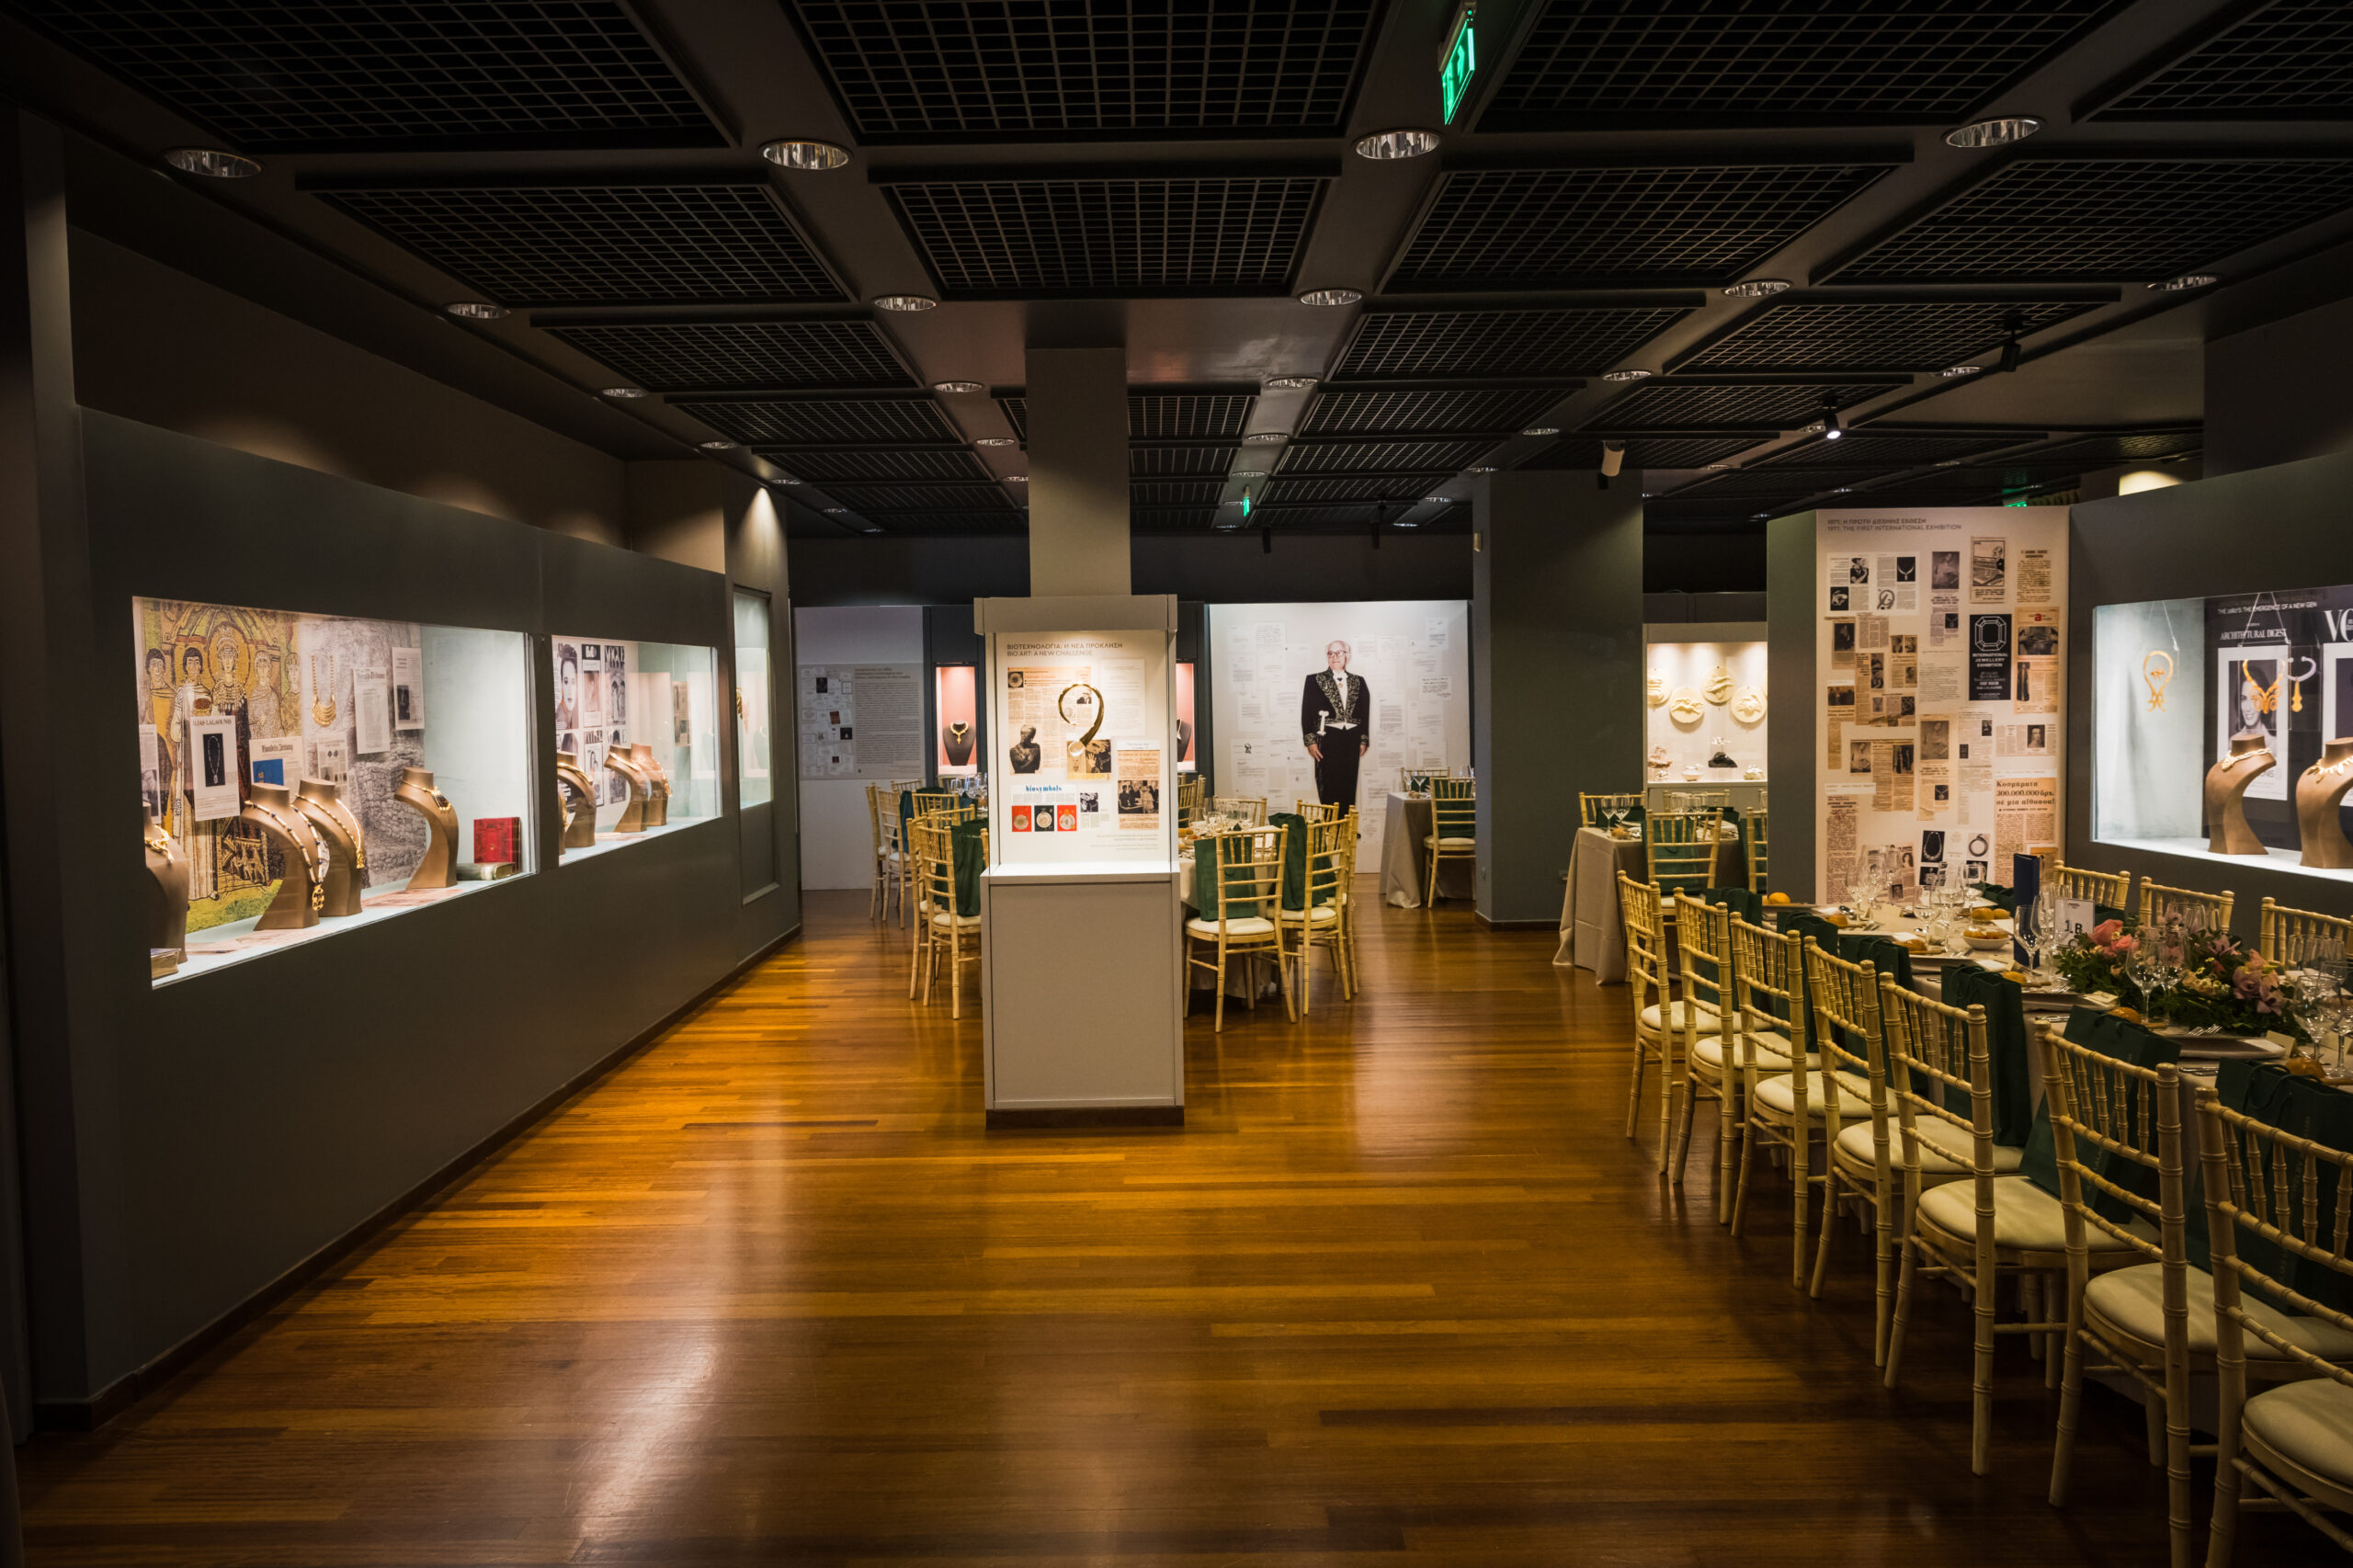 Το Μουσείο Κοσμήματος Ηλία Λαλαούνη διοργανώνει την επετειακή περιοδική έκθεση «Ηλίας Λαλαούνης: αναδρομή στην καινοτομία»